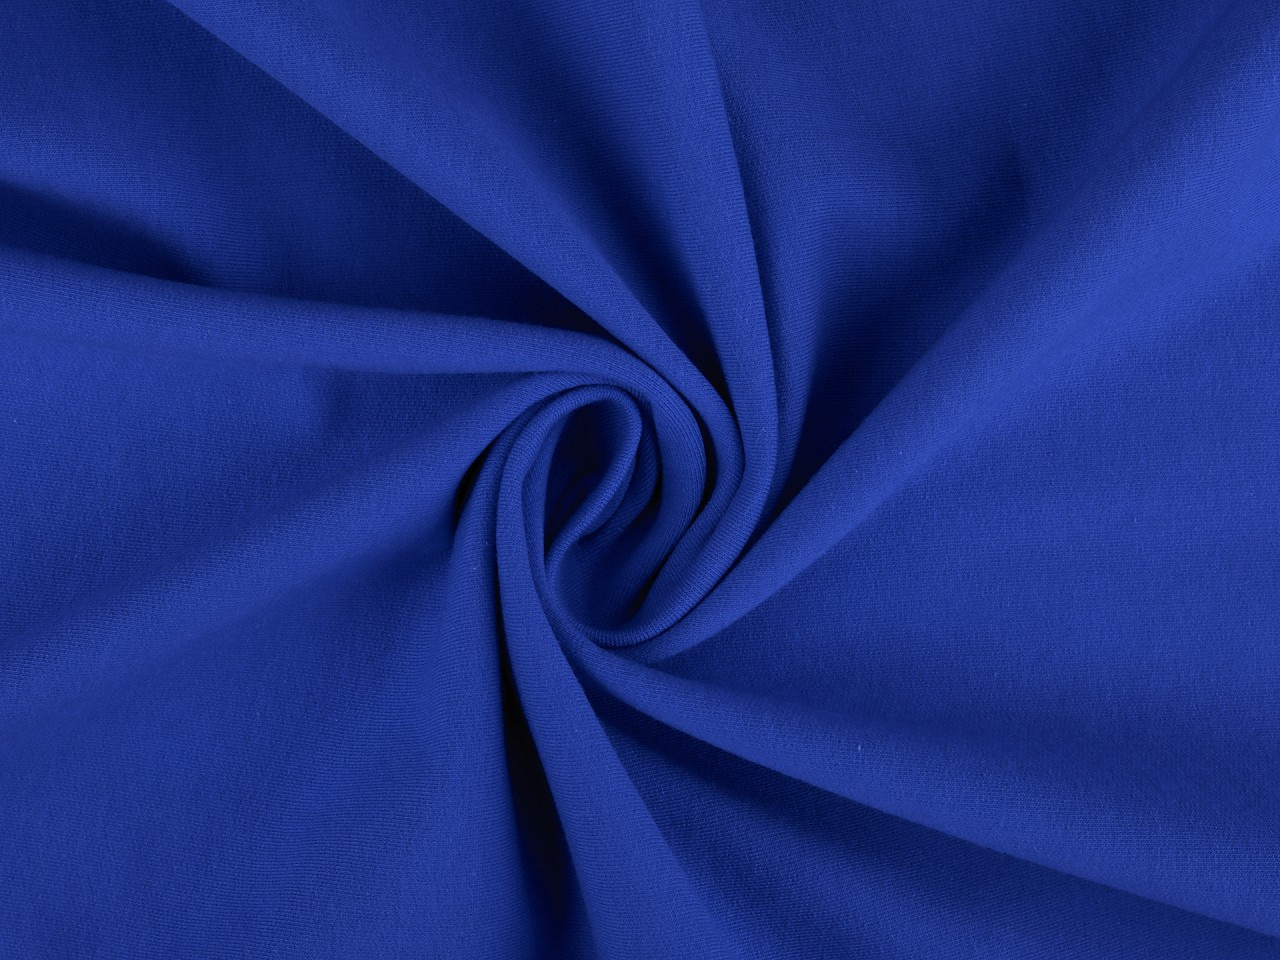 Teplákovina bavlněná nepočesaná jednobarevná, barva 13 (B-037/1) modrá královská